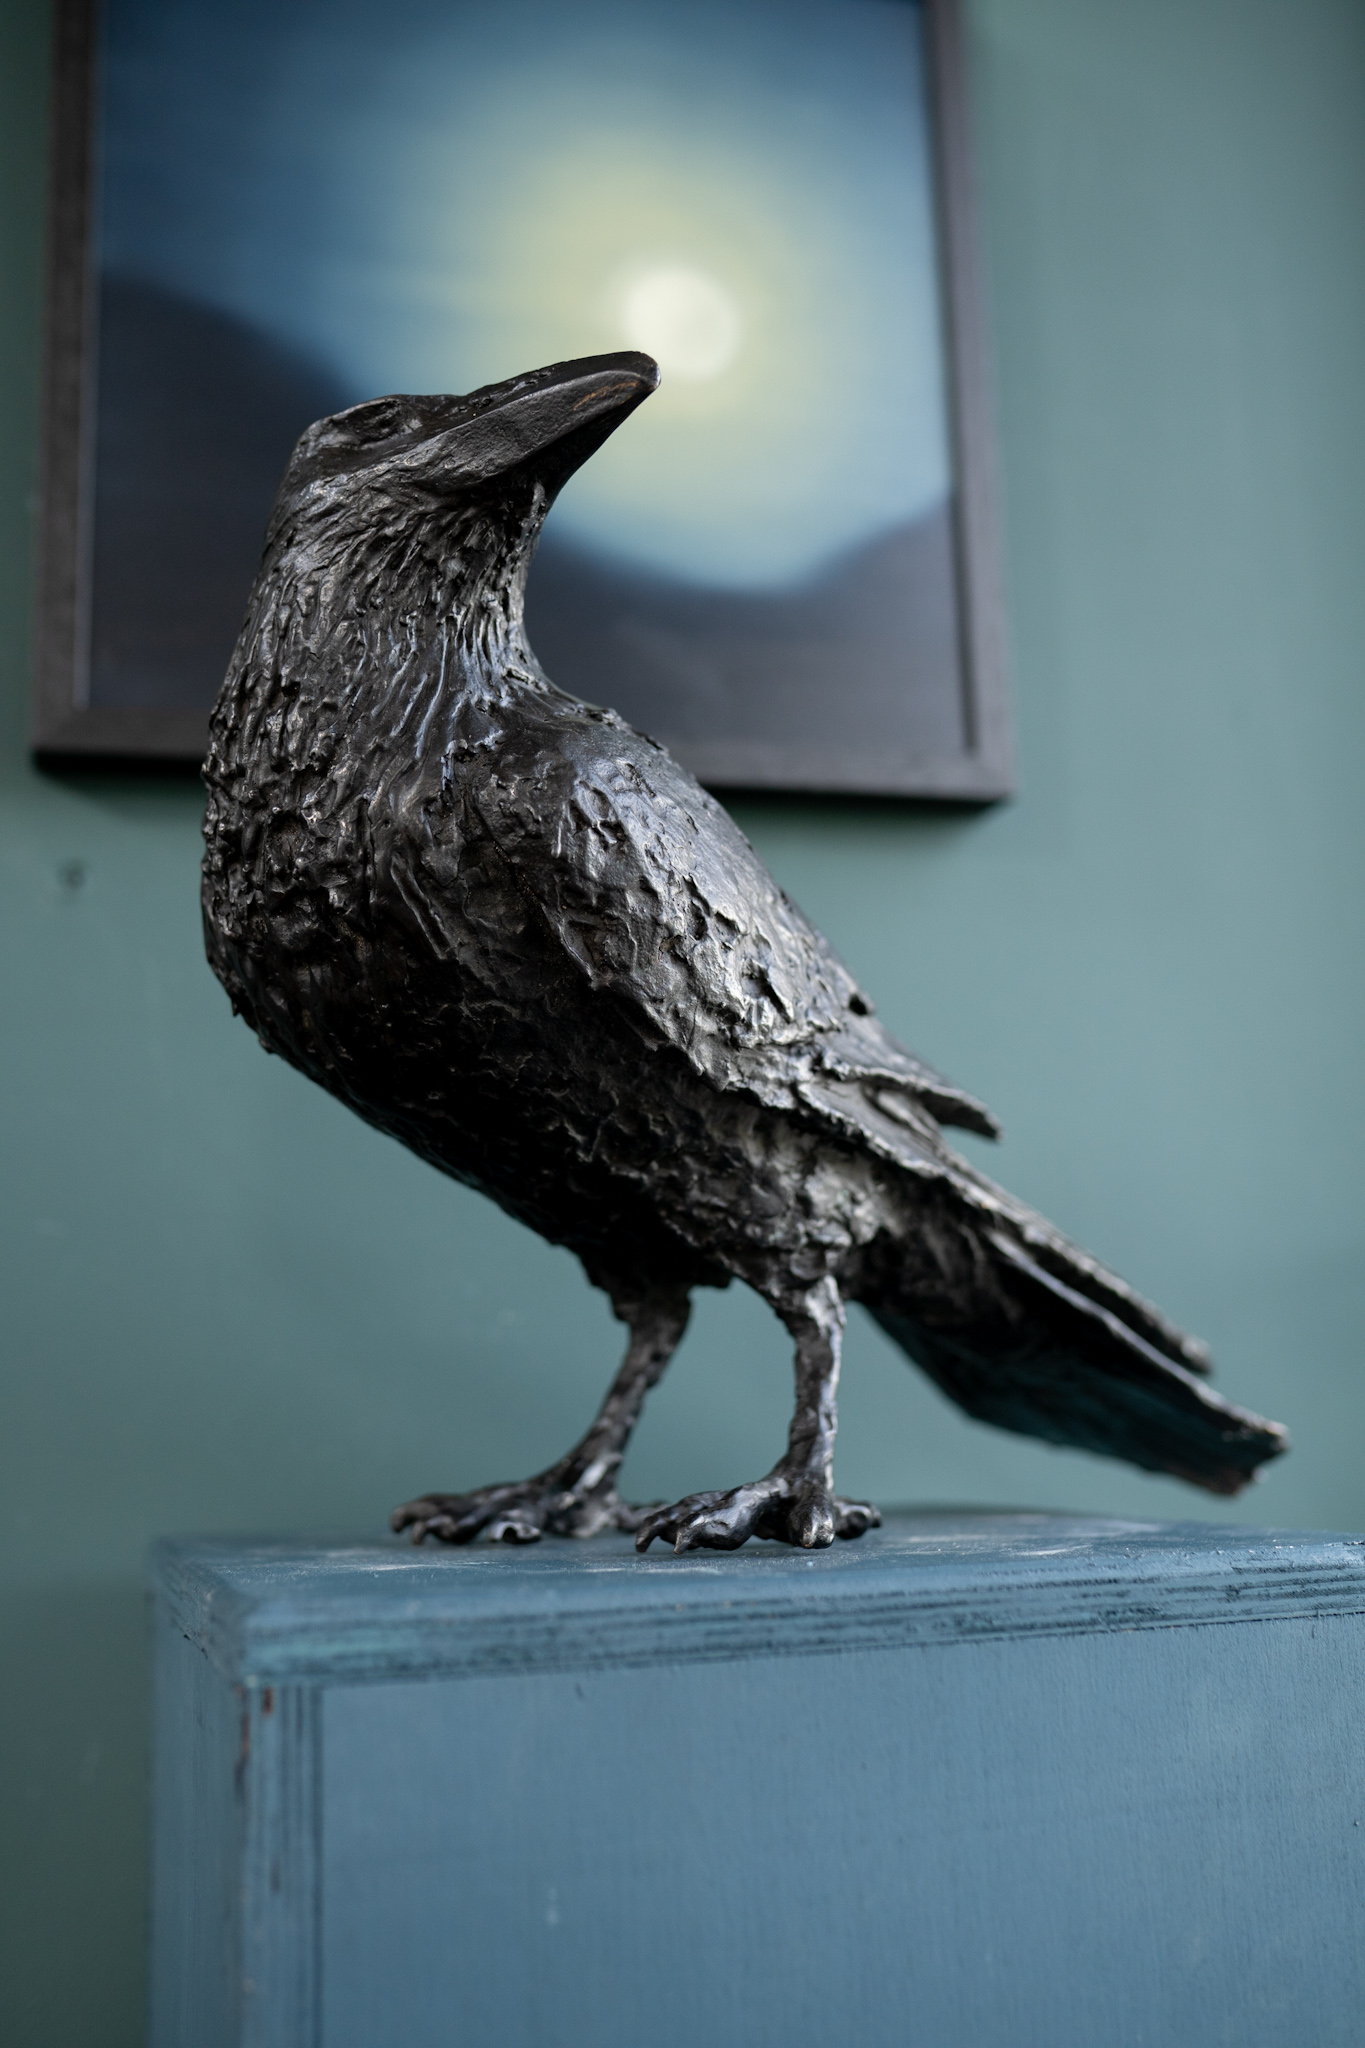 Adam Pomeroy sculpture bronze raven crow